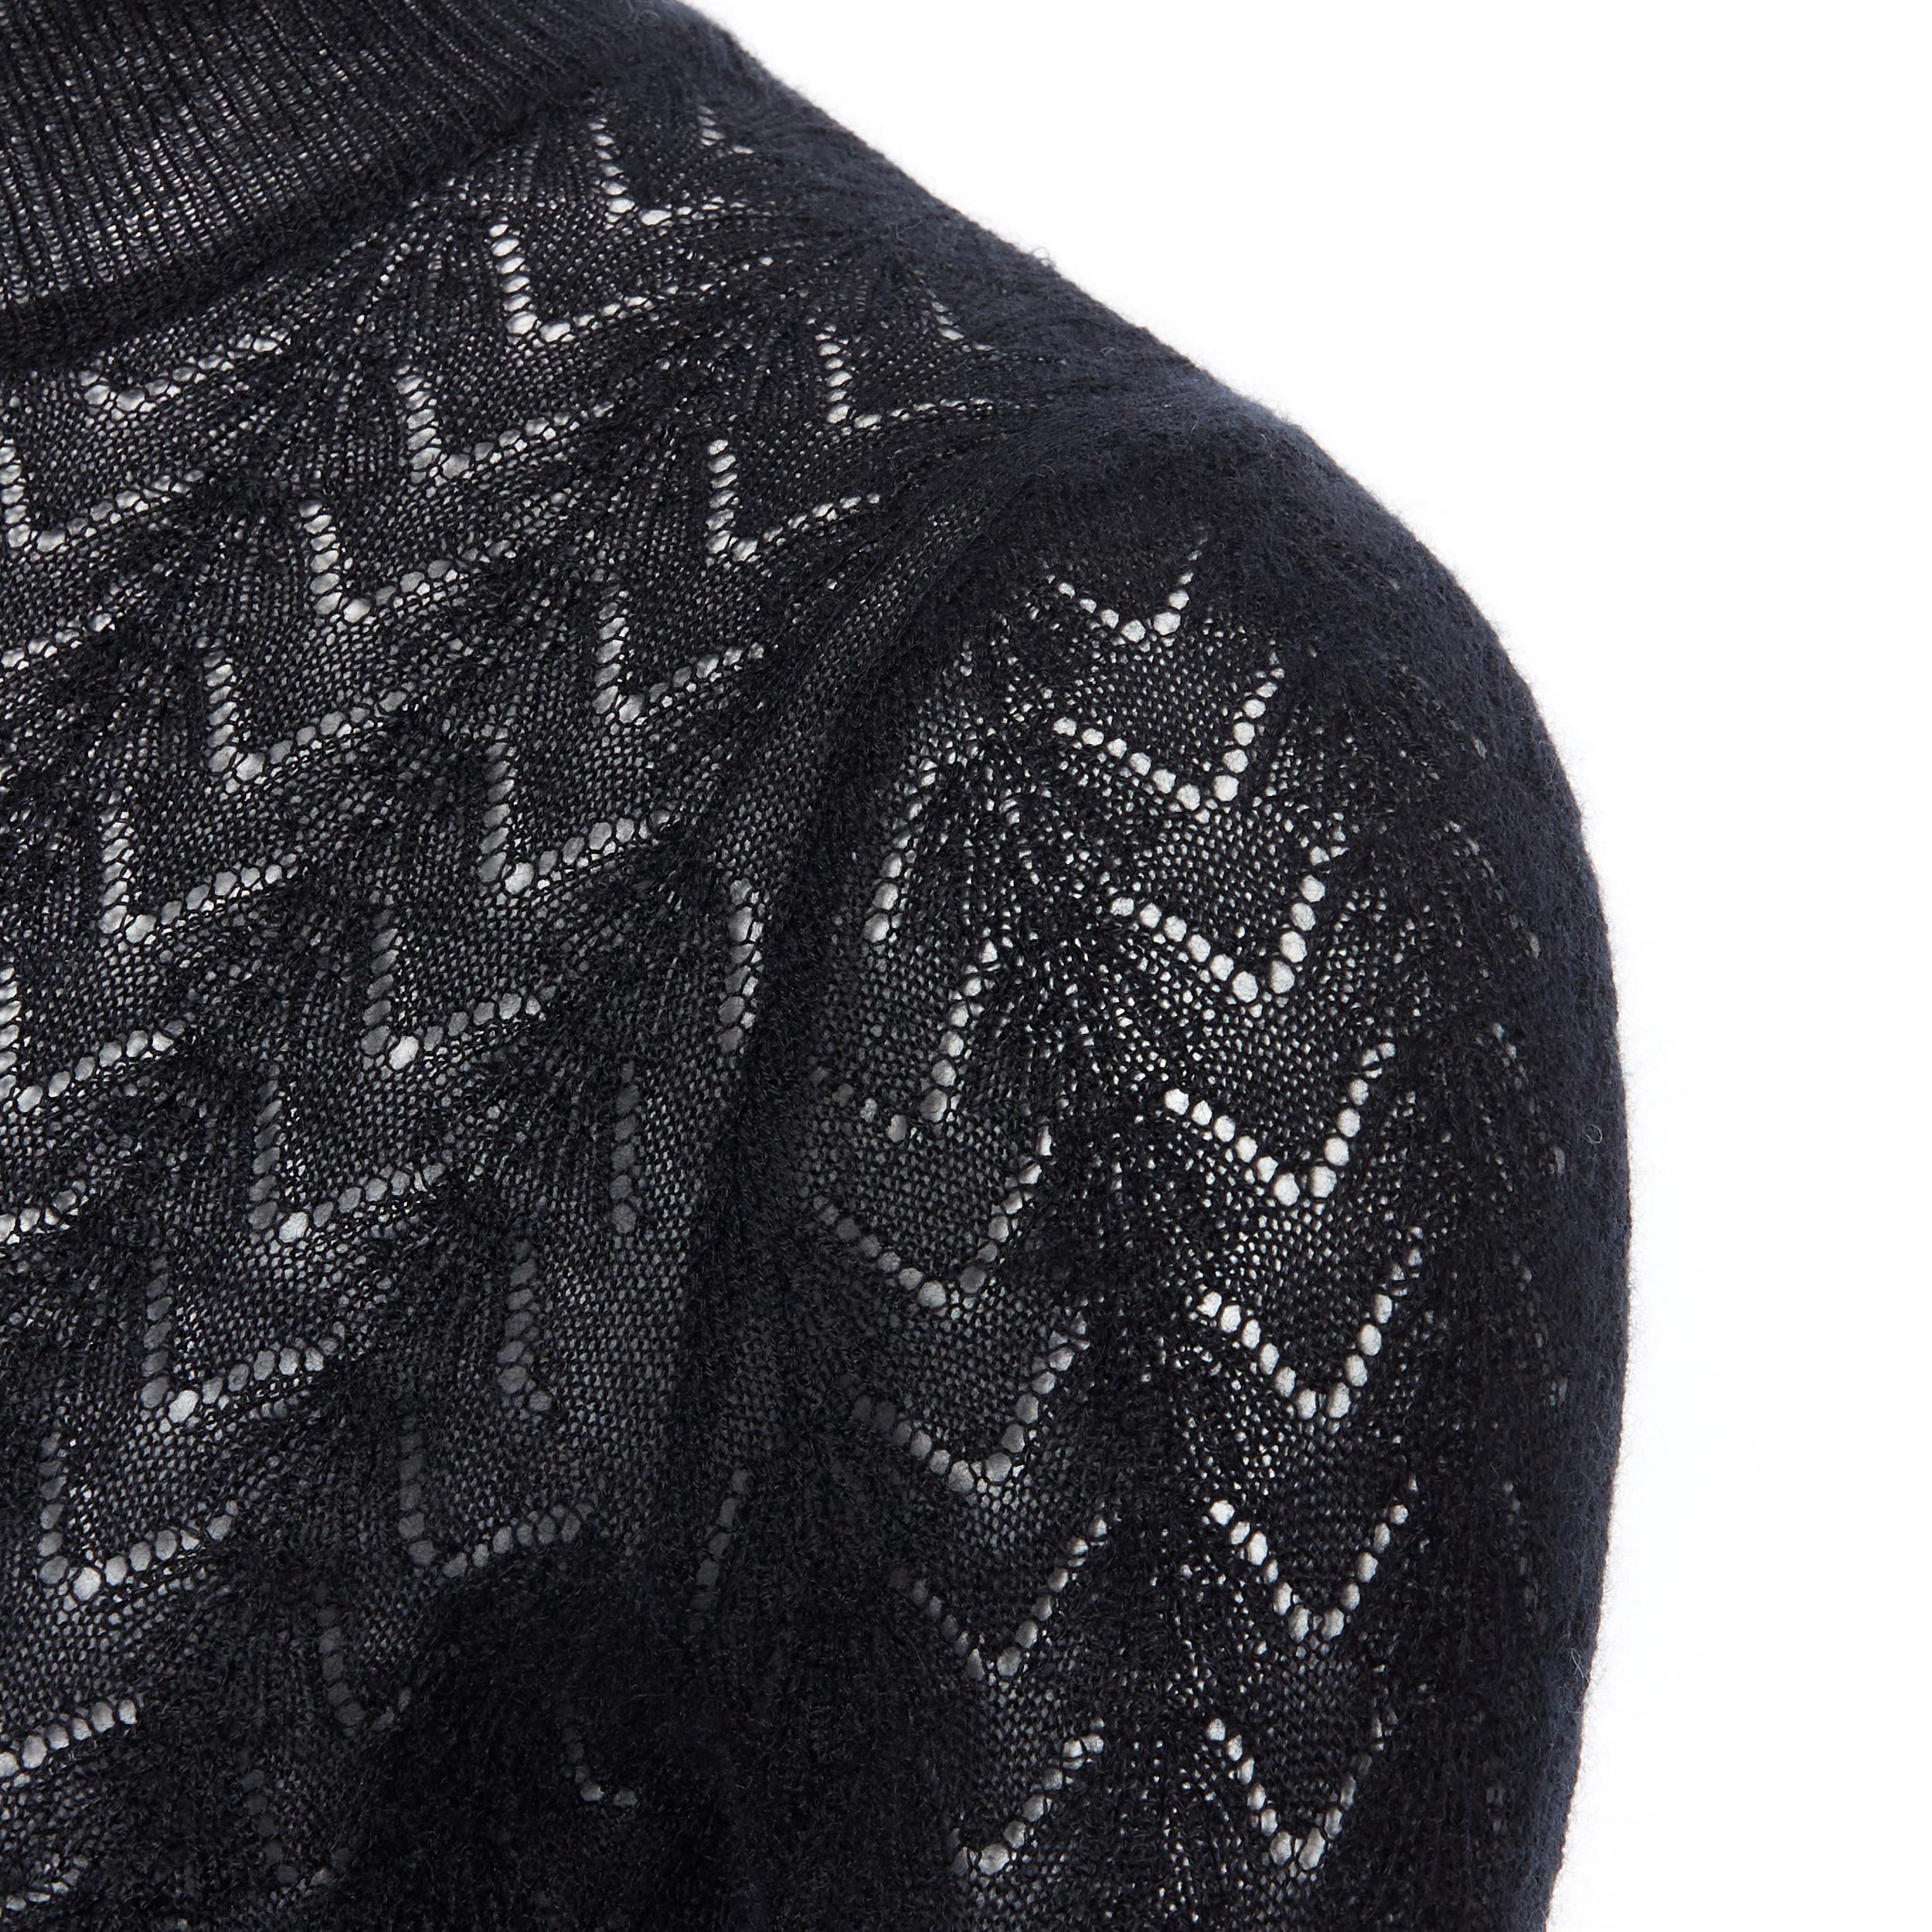 Women's LOUIS VUITTON 100% cashmere black lace loose knit  turtleneck sweater top M